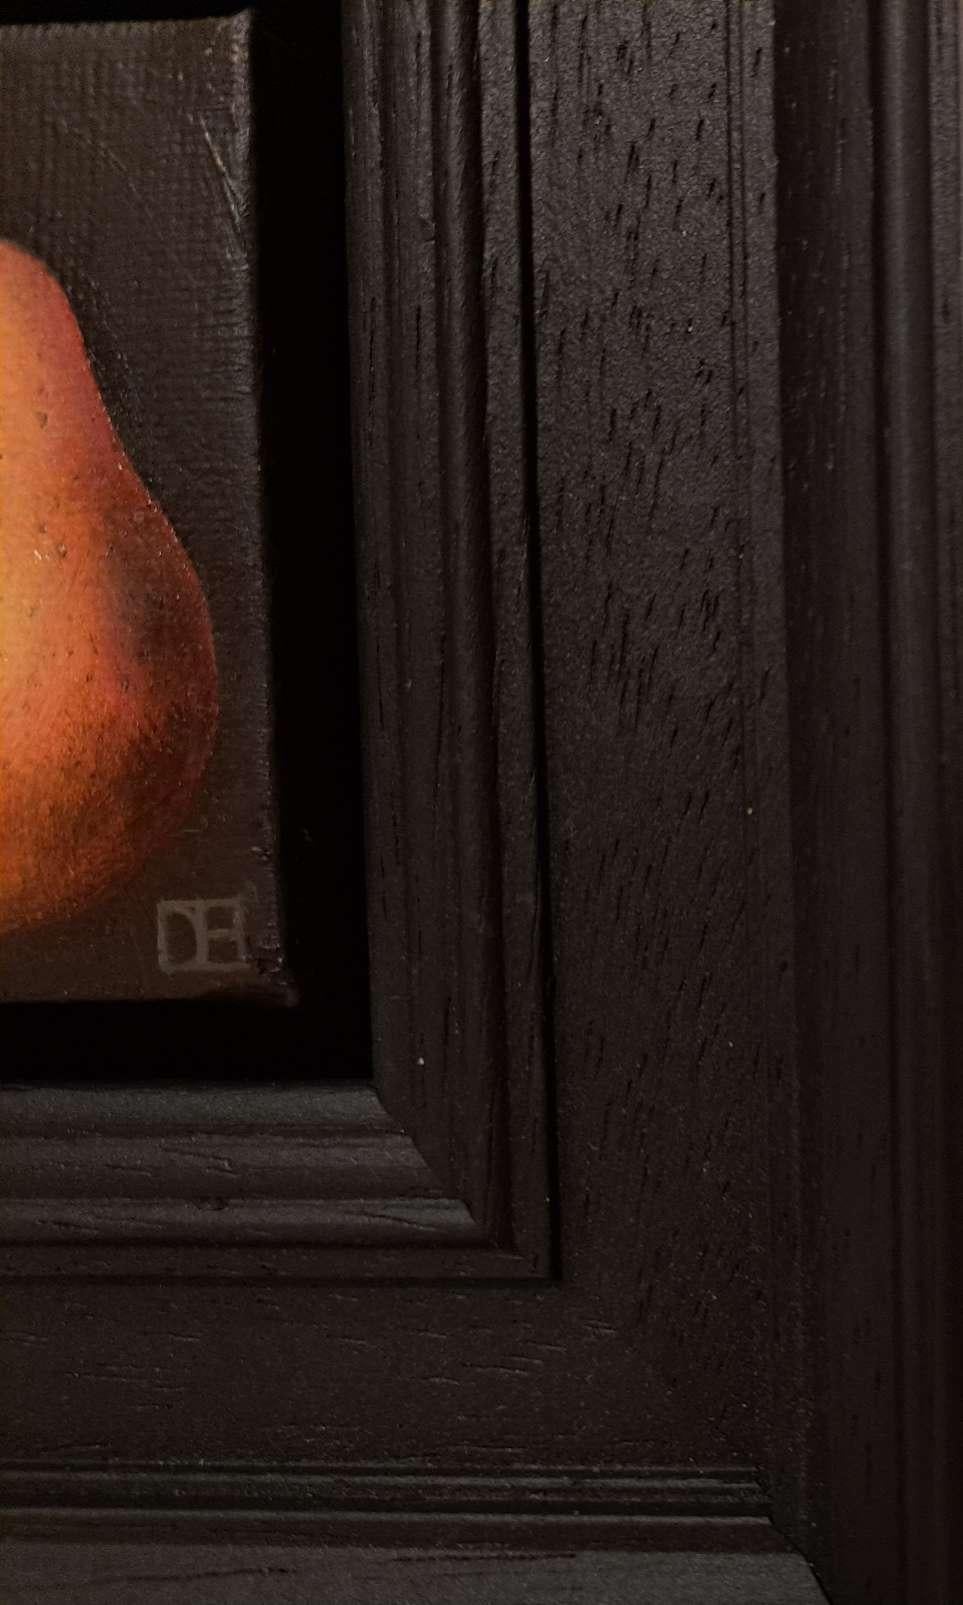 Pocket Pink Blush Pear est une peinture à l'huile originale réalisée par Dani Humberstone dans le cadre de sa série Pocket Painting, qui propose des peintures à l'huile réalistes à petite échelle, avec un clin d'œil aux natures mortes baroques. Les